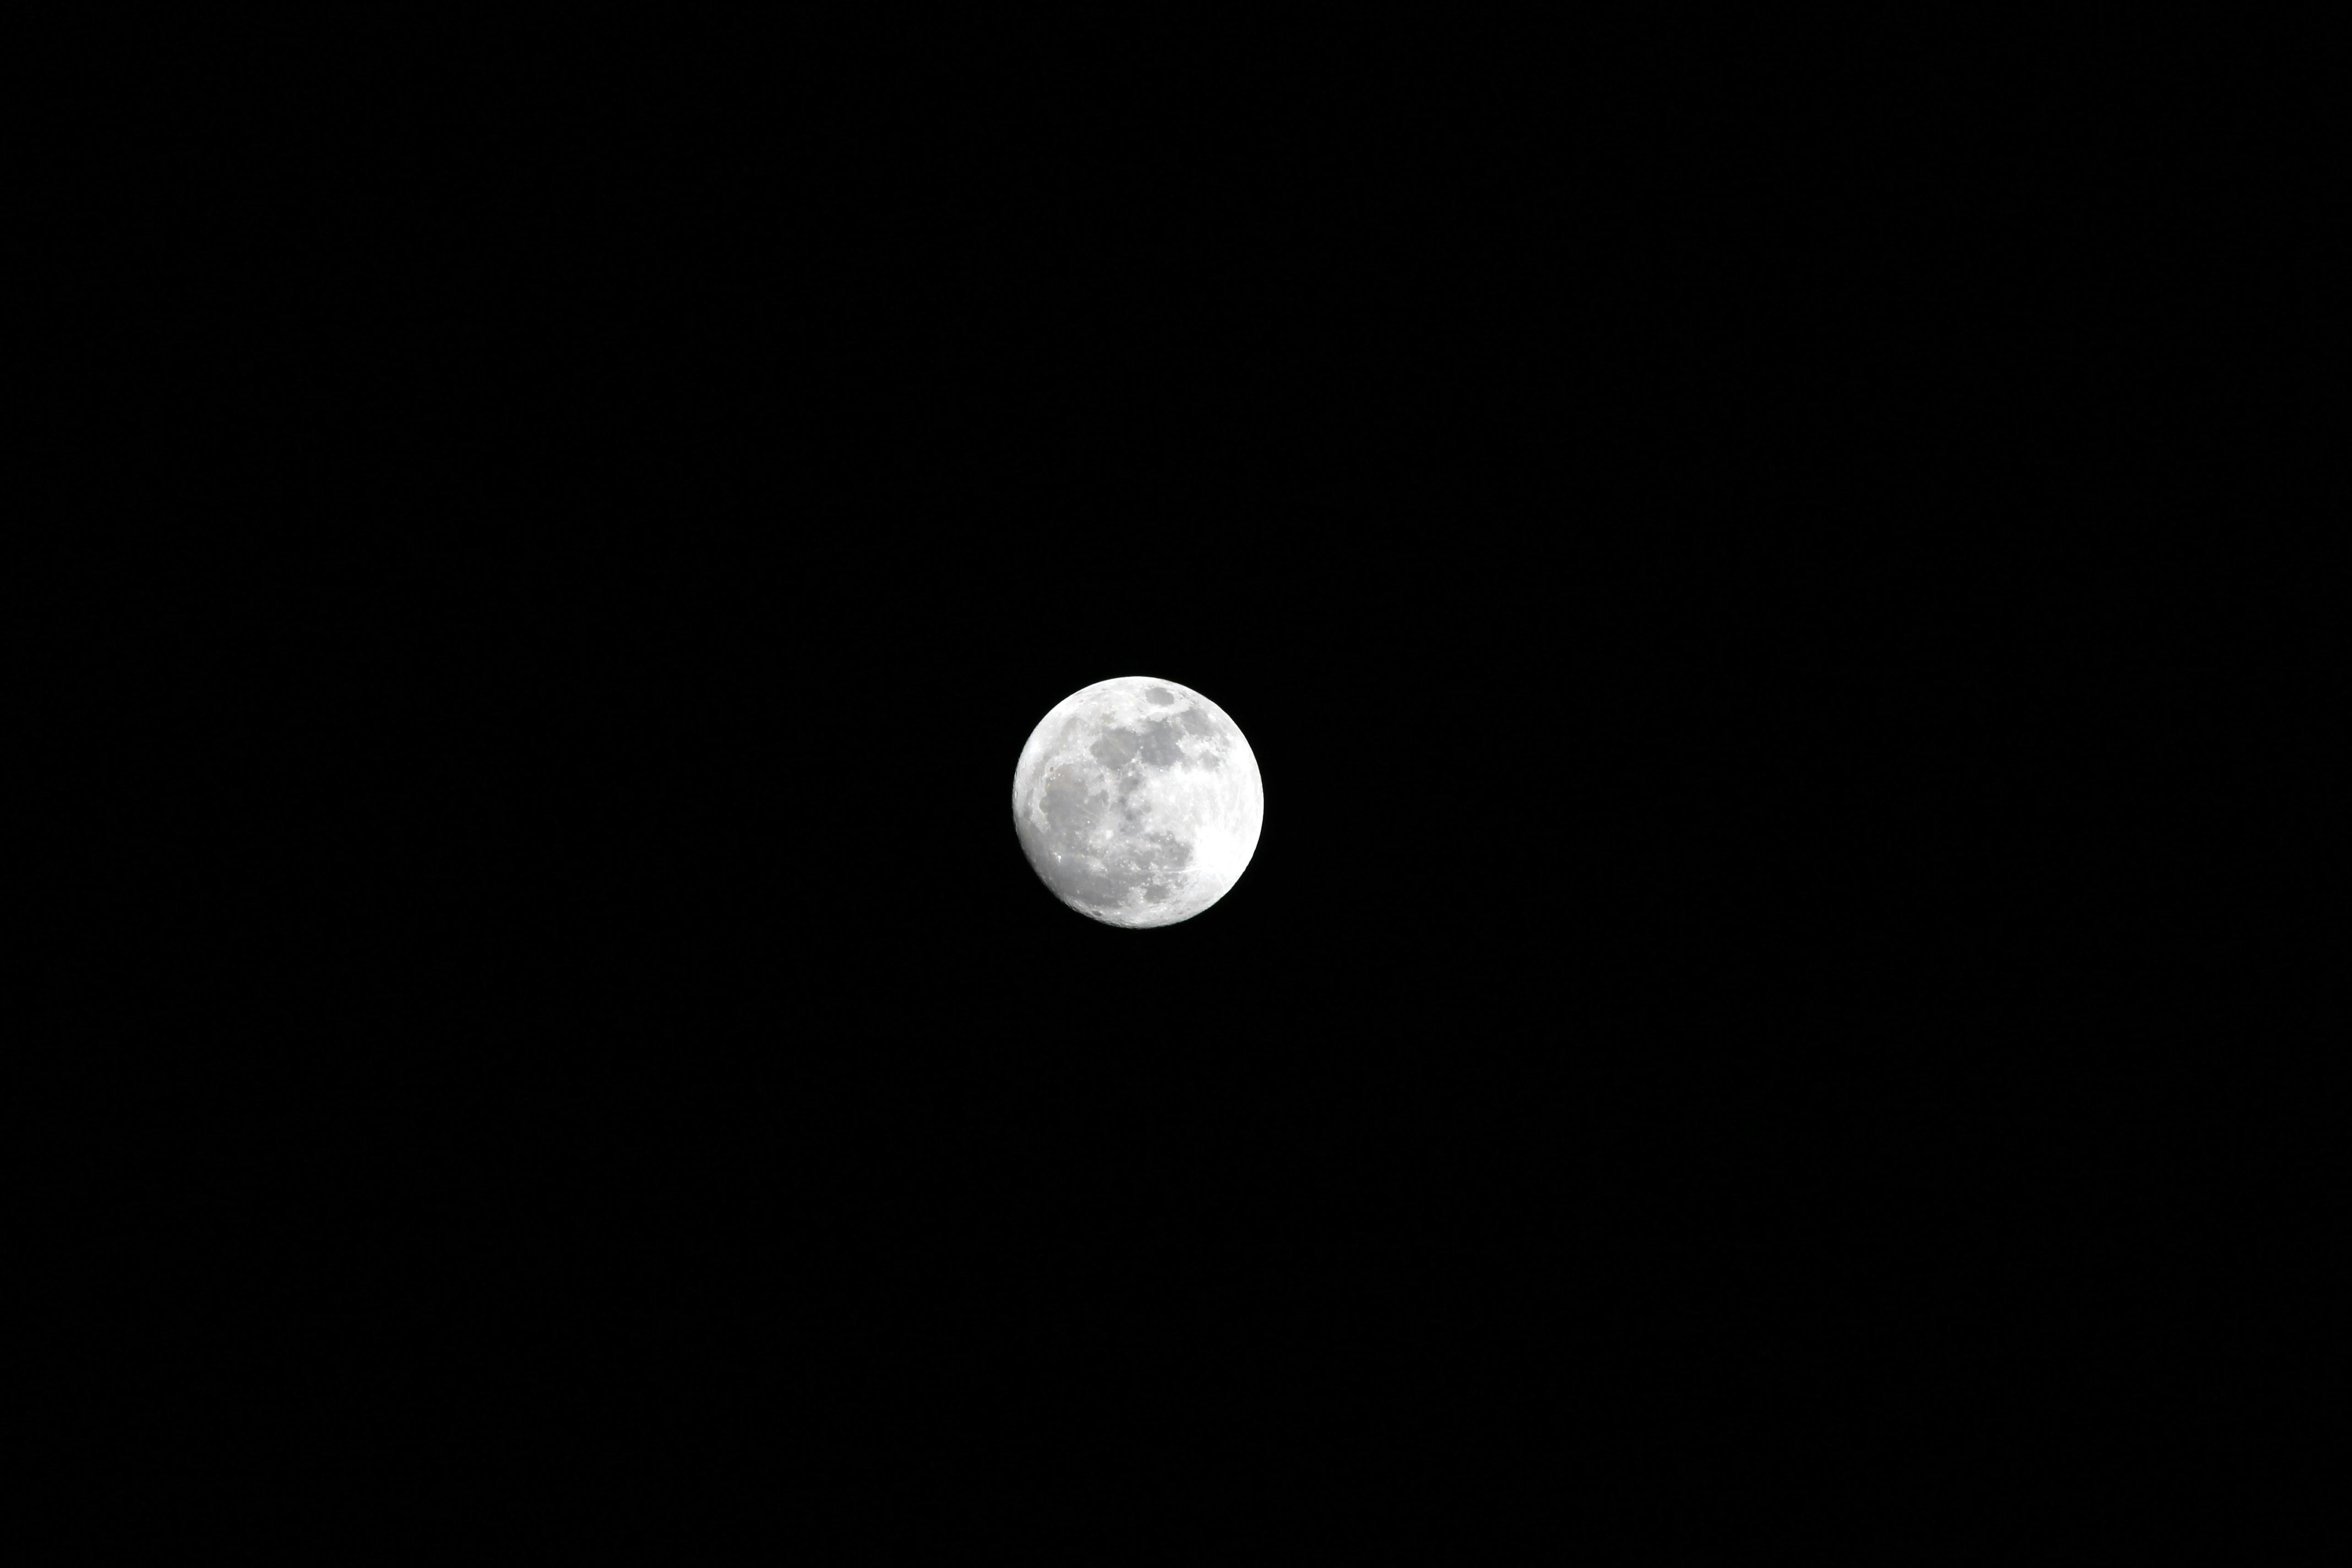 Free stock photo of #moon #night #dark #black #white #nature #beauty